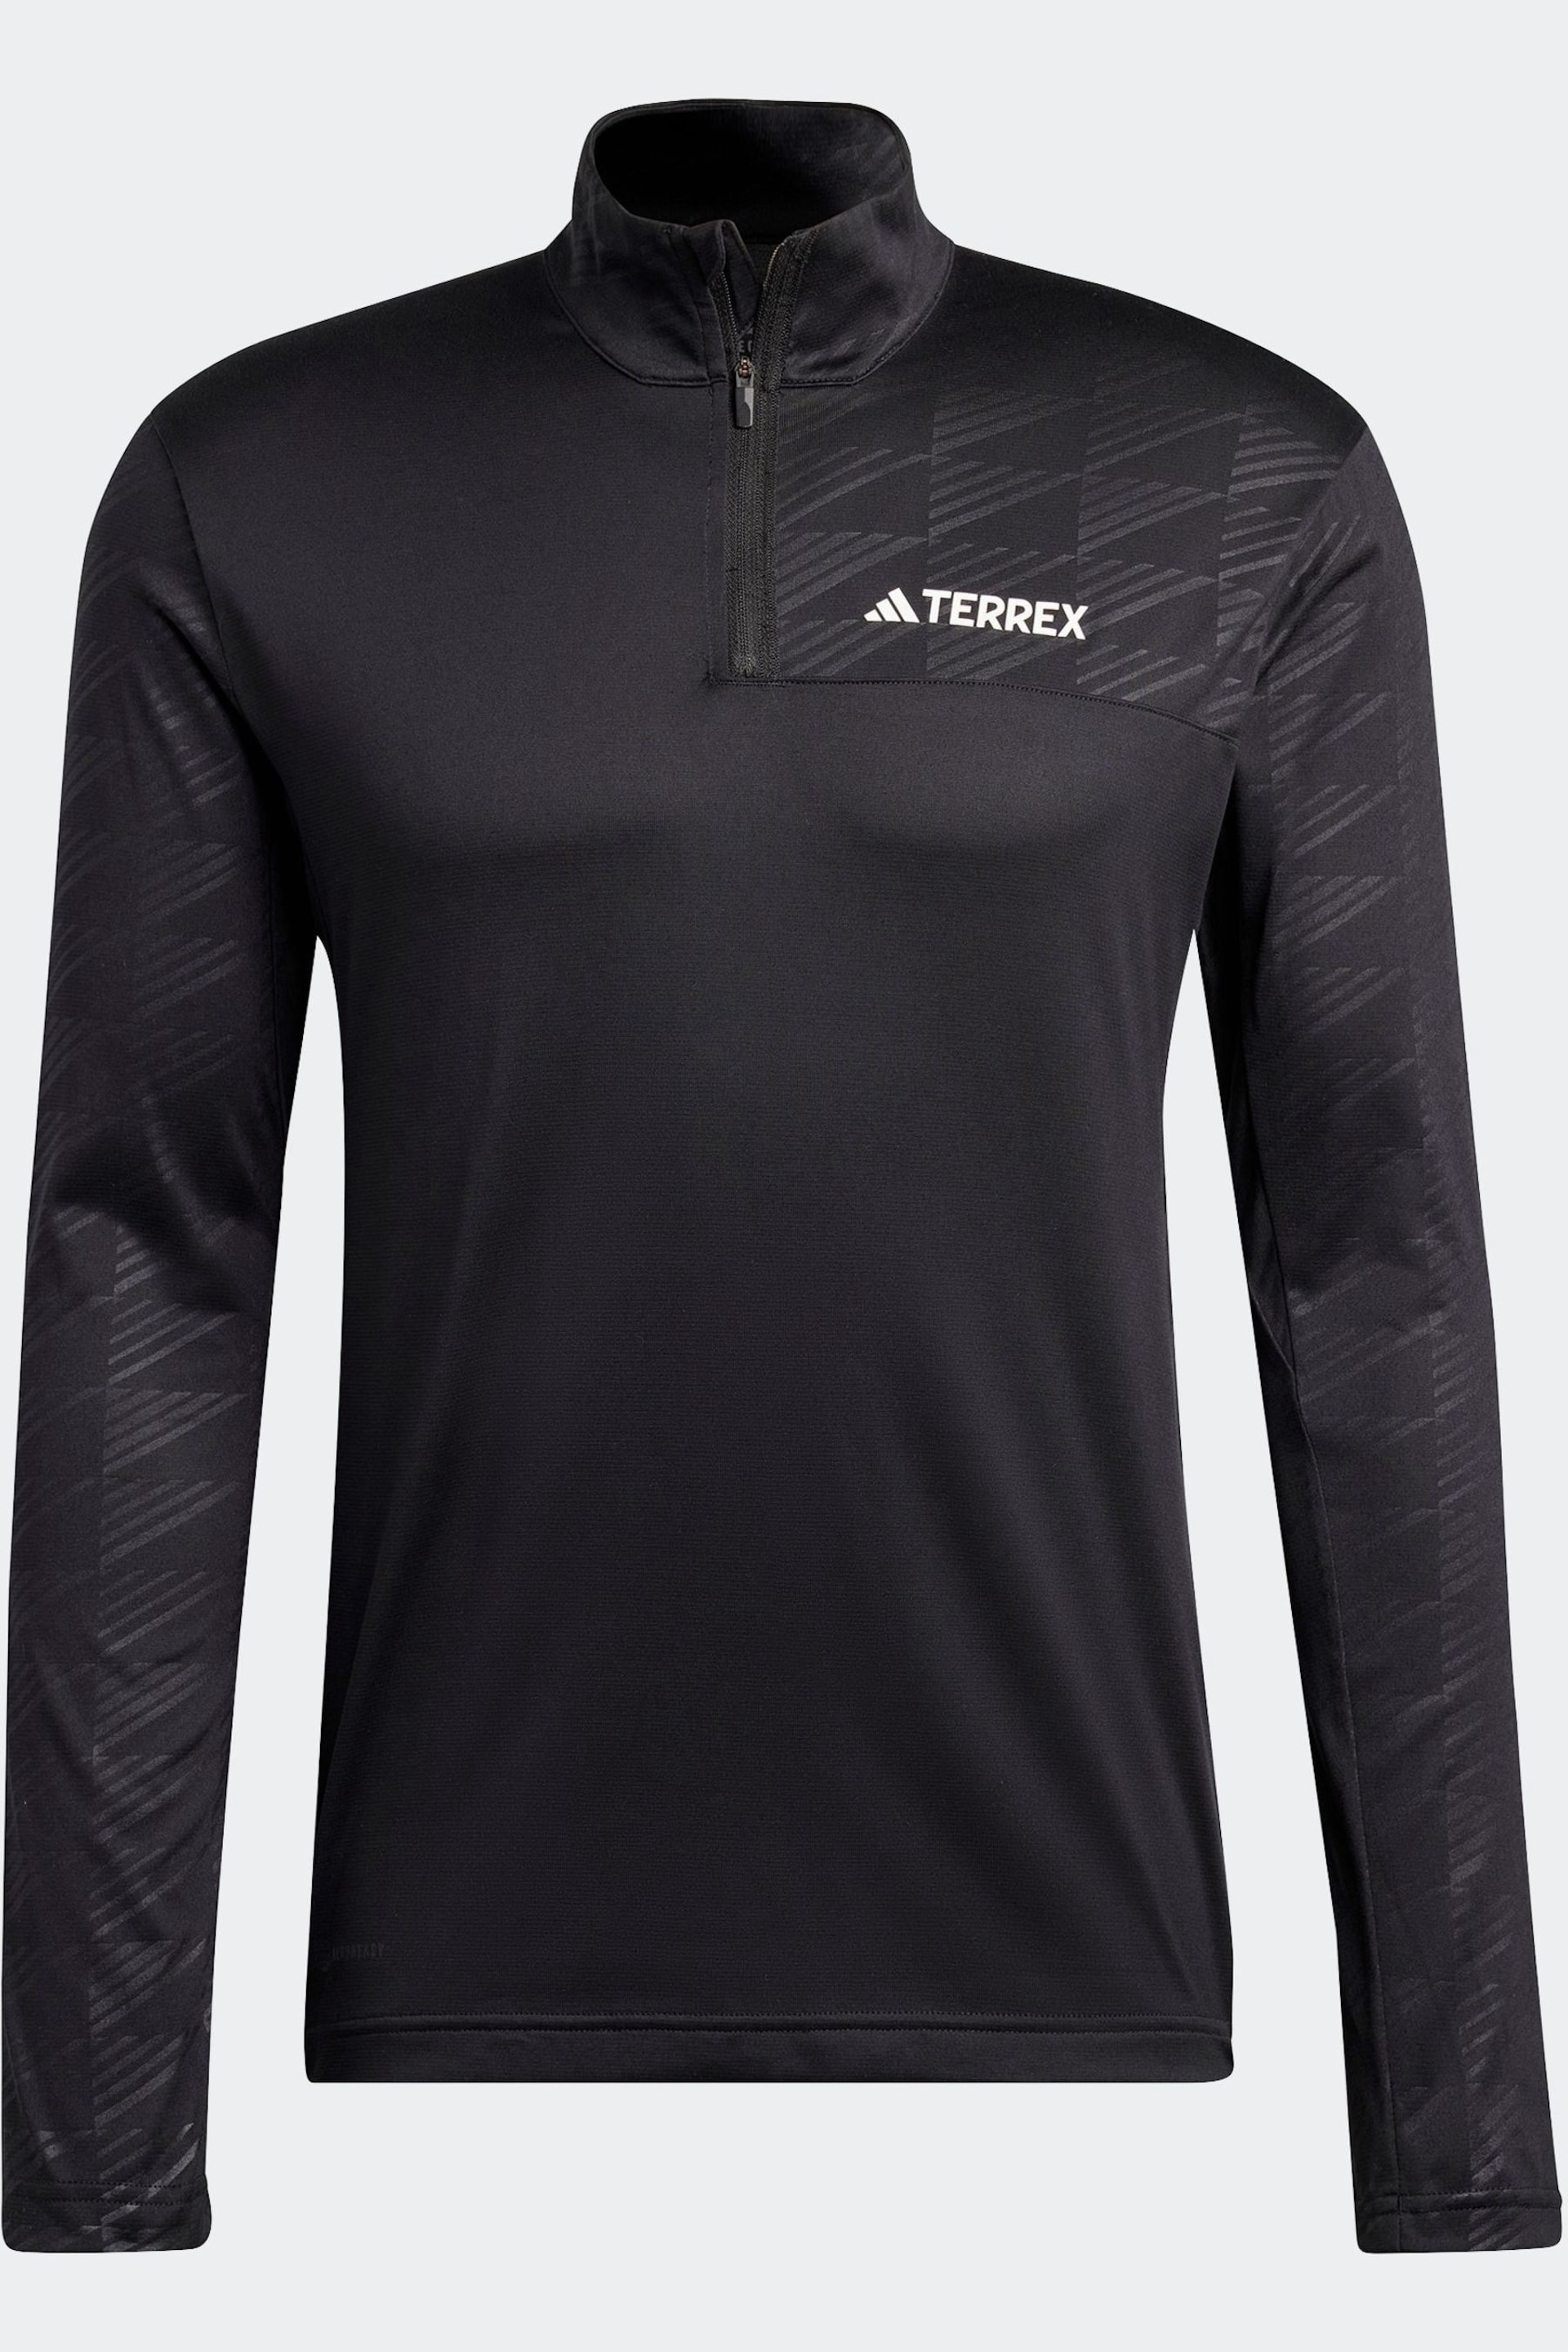 adidas Terrex Khaki Green Half Zip Long Sleeve Fleece - Image 8 of 8